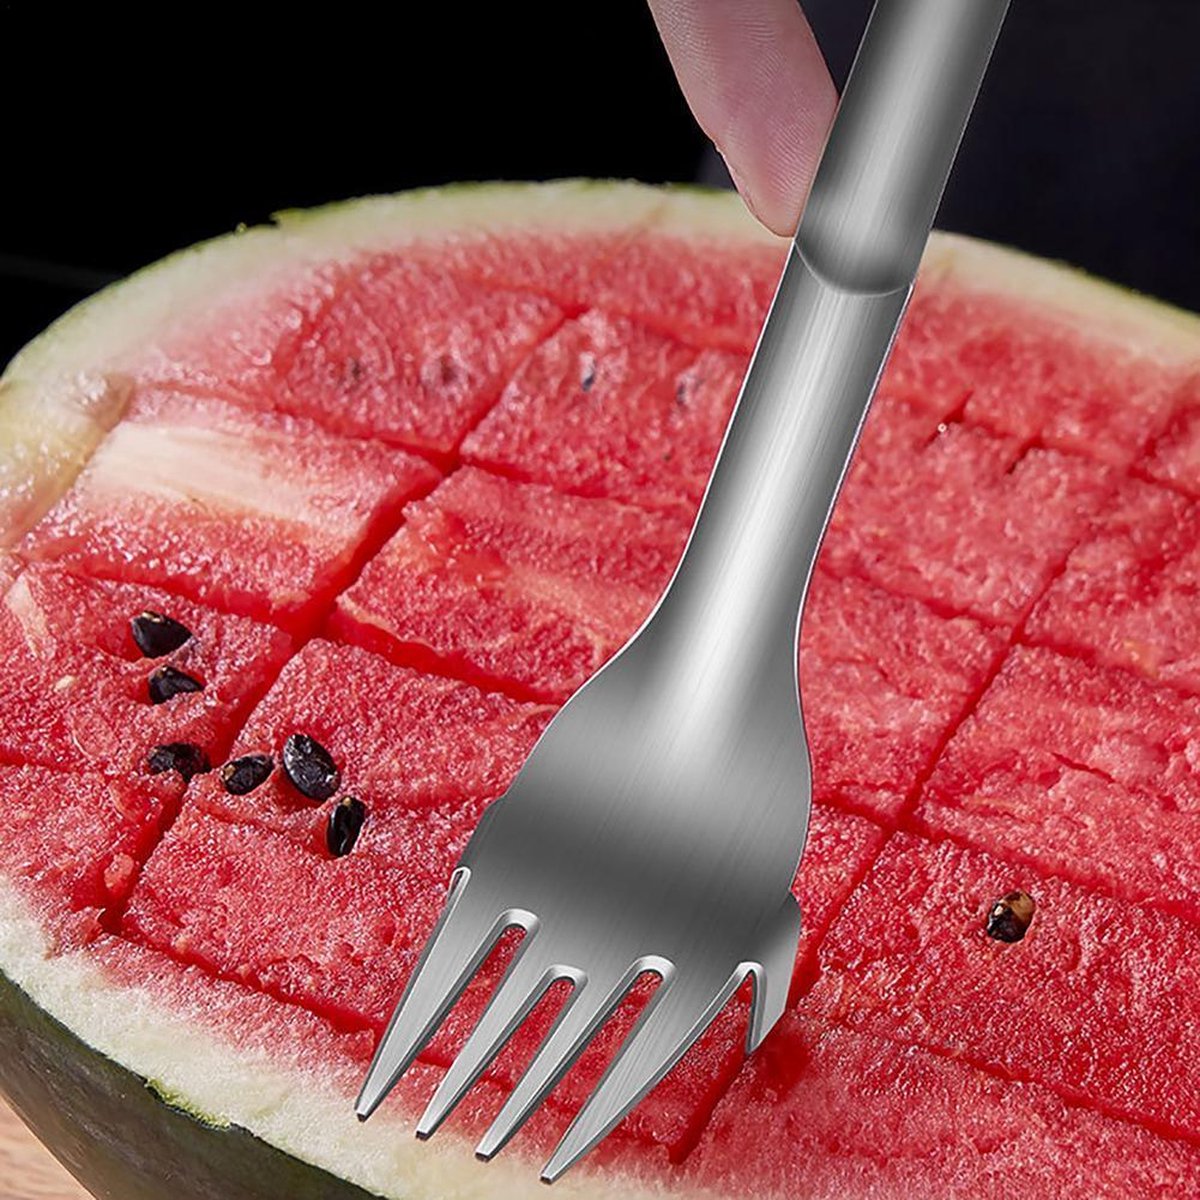 Ariko Wassermelonenschneider und -gabel aus Edelstahl | Melonenschneider | Melonenbesteck | Dessertgabel | Wassermelone | Melone schneiden | rostfreier Stahl